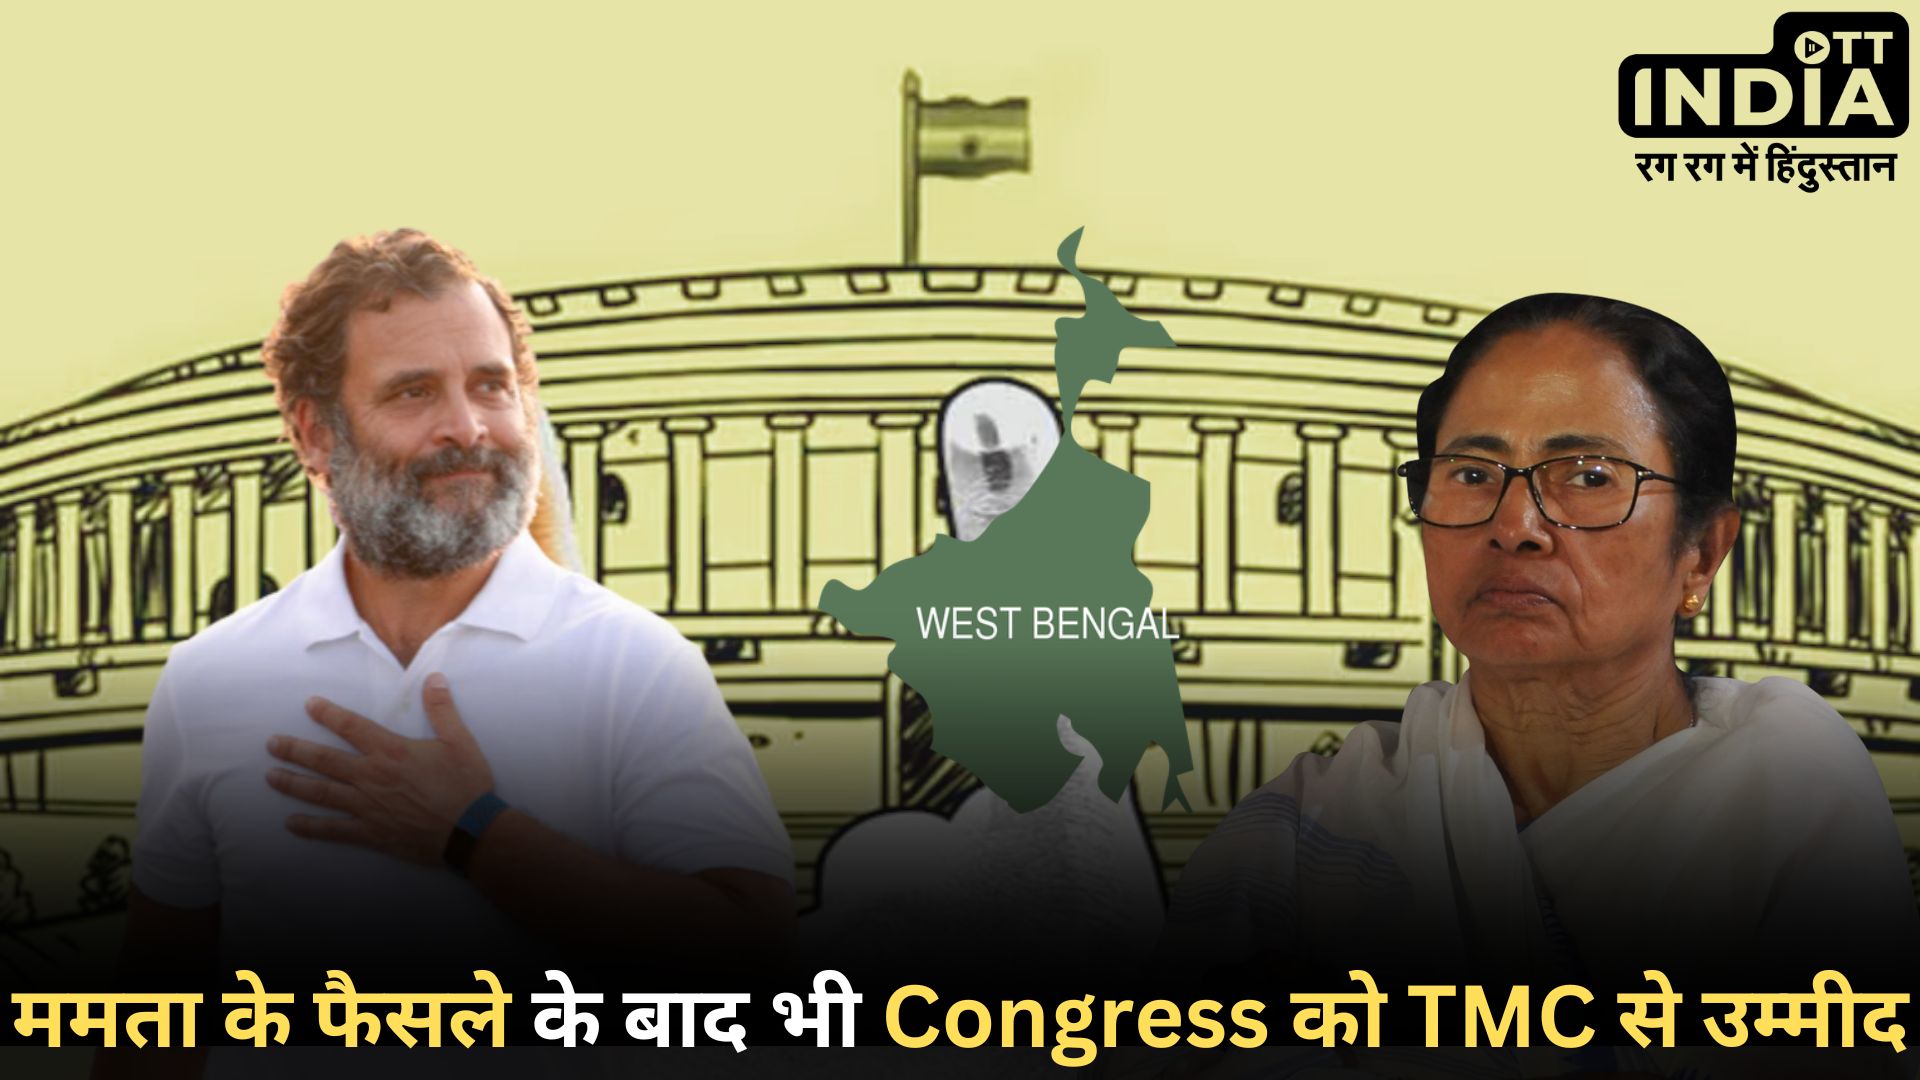 TMC vs Congress: टीएमसी का 42 सीटों पर स्वतंत्र रूप से चुनाव लड़ने का ऐलान, कांग्रेस ने कहा- हमारे दरवाजे अभी भी खुले हैं…